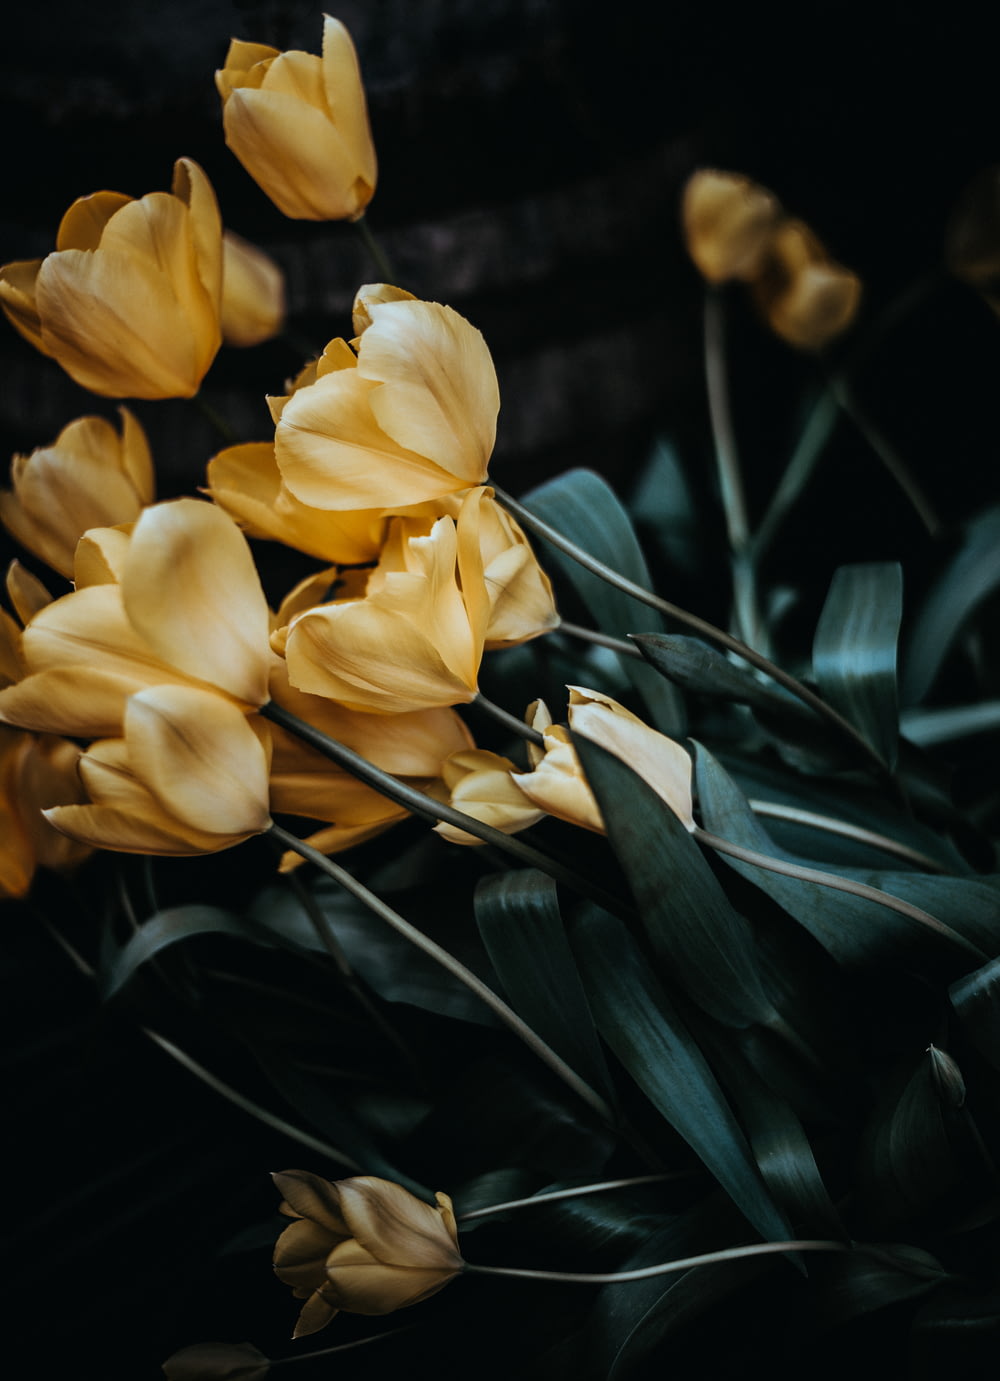 Selektive Fotografie von beigefarbenen Blütenblättern